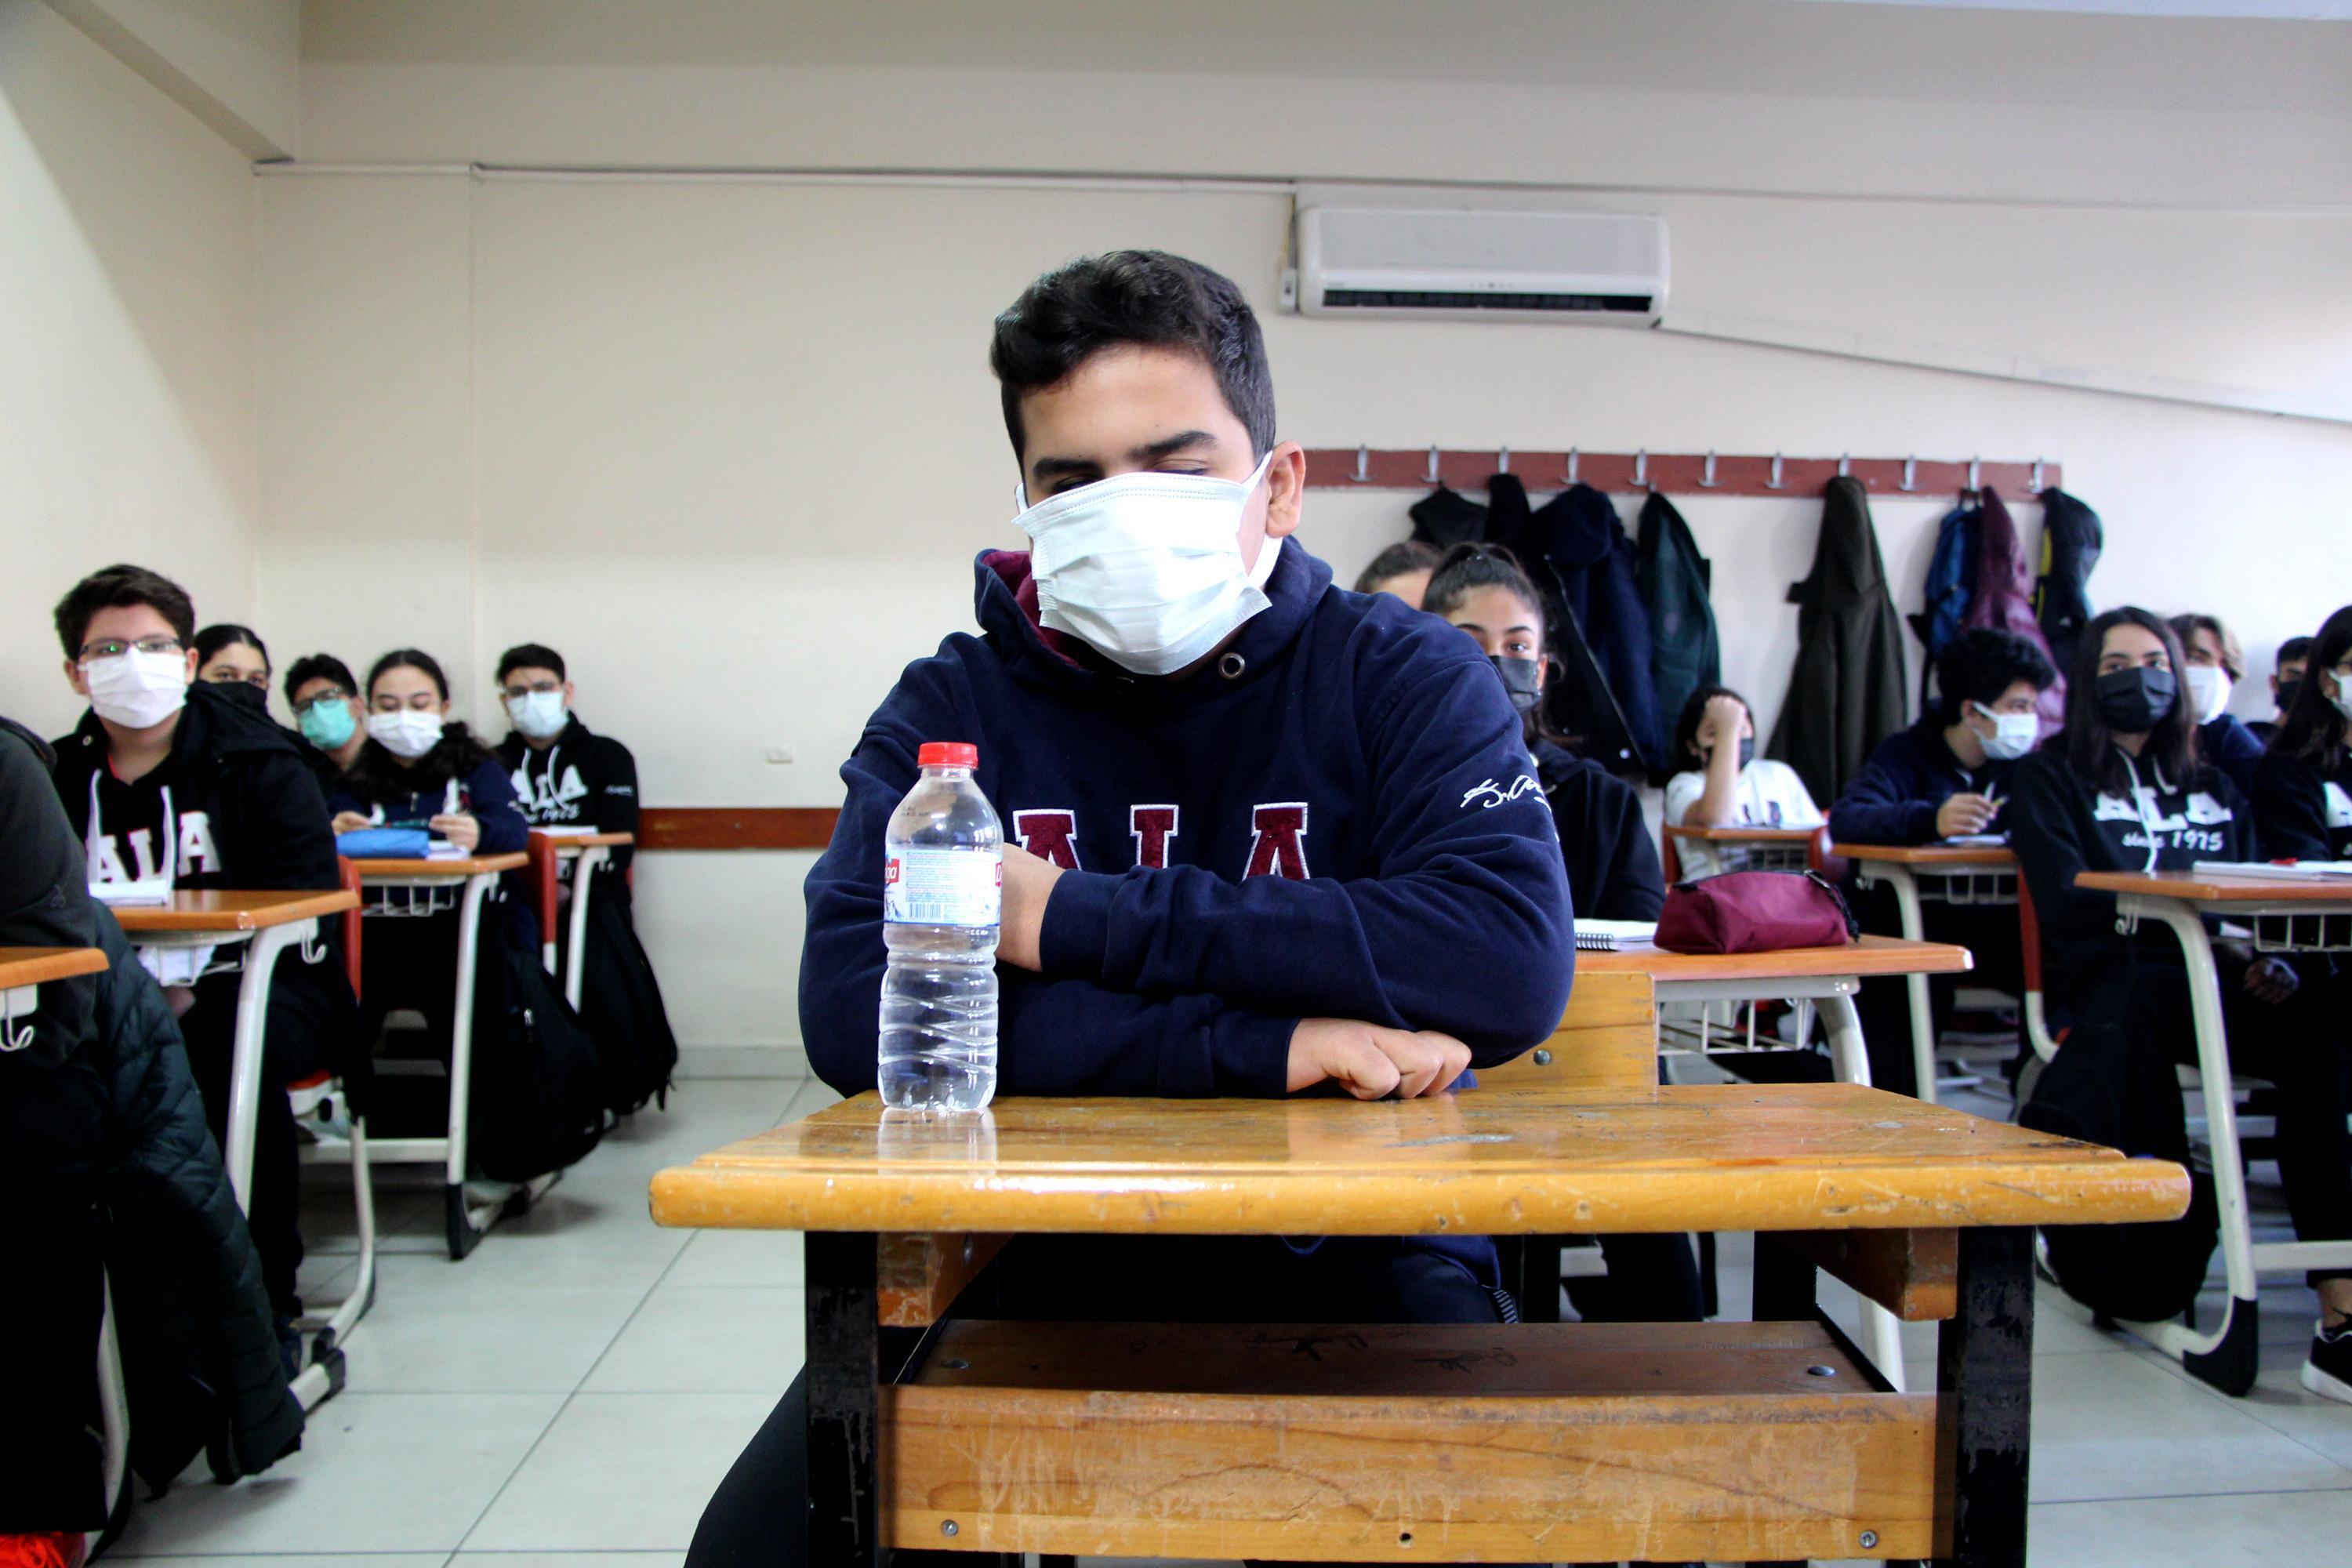 DHAnın haberi ses getirdi, Ahmet Arda hayalini kurduğu okula yerleşti